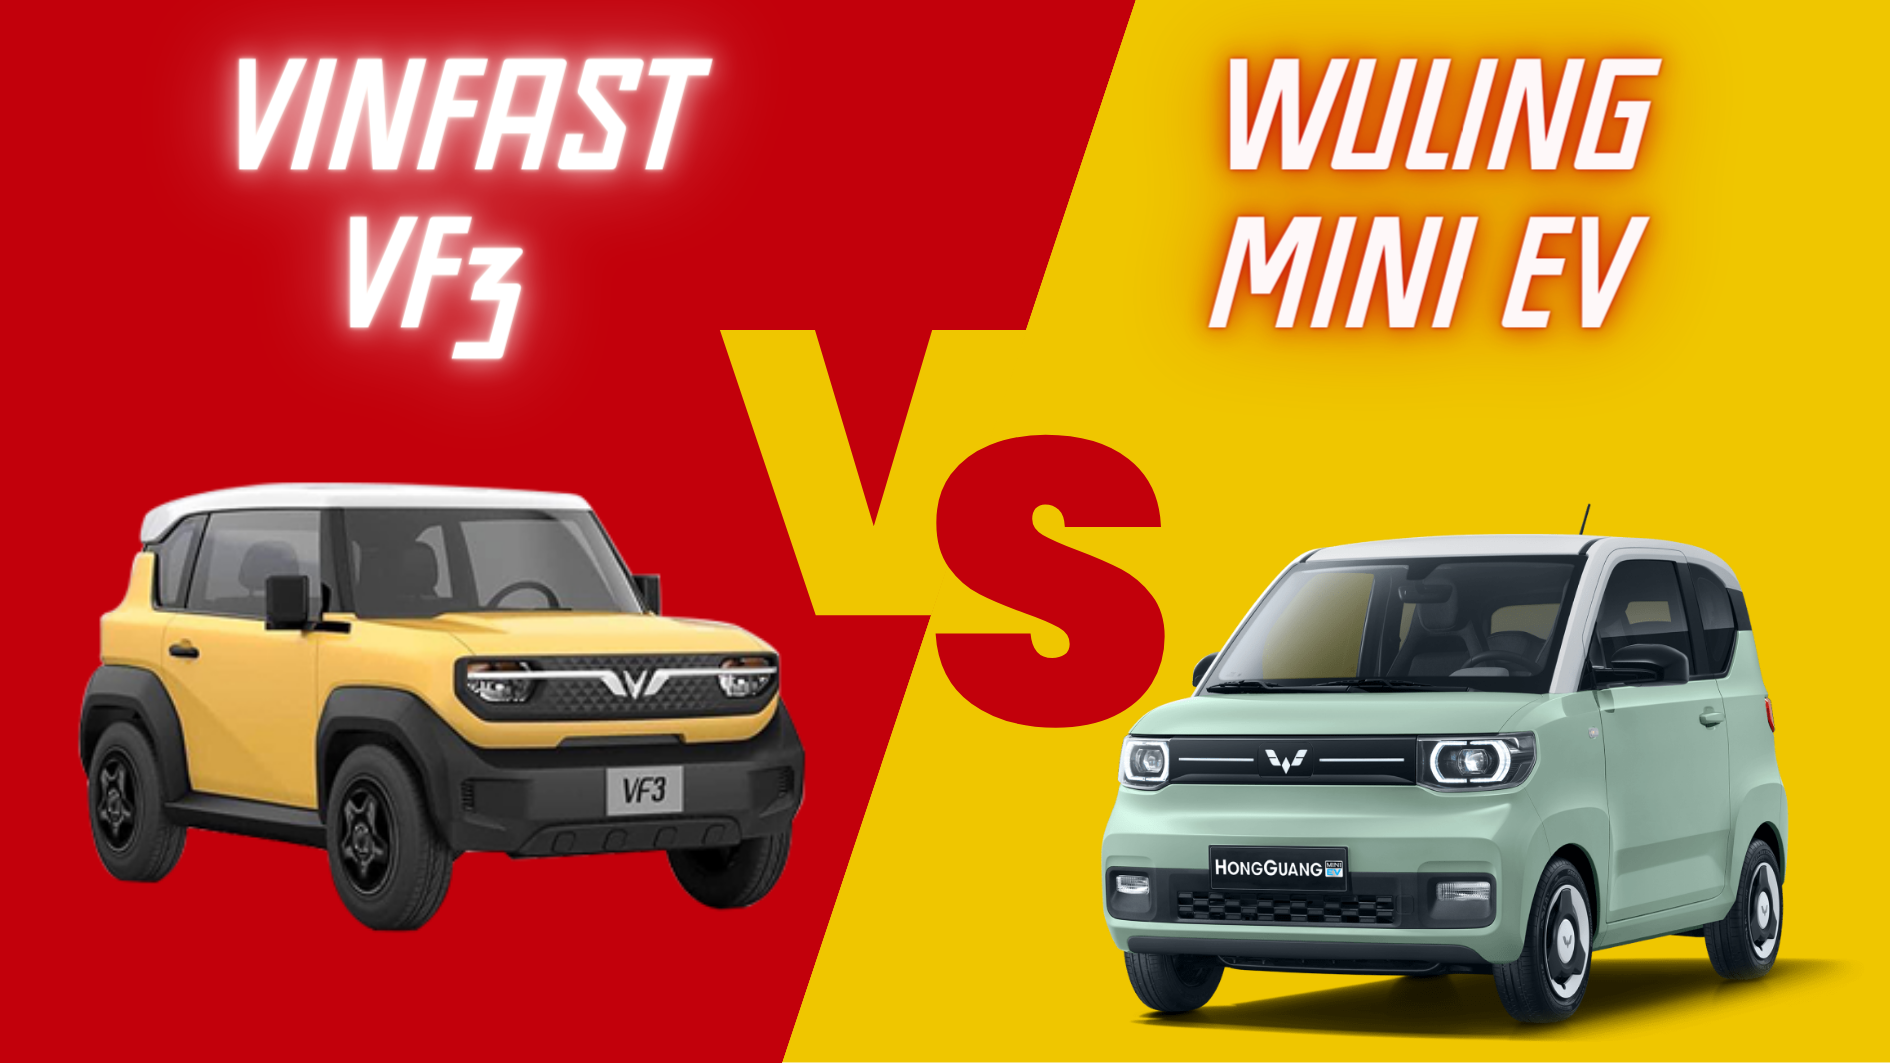  So sánh VinFast VF3 và Wuling Mini EV